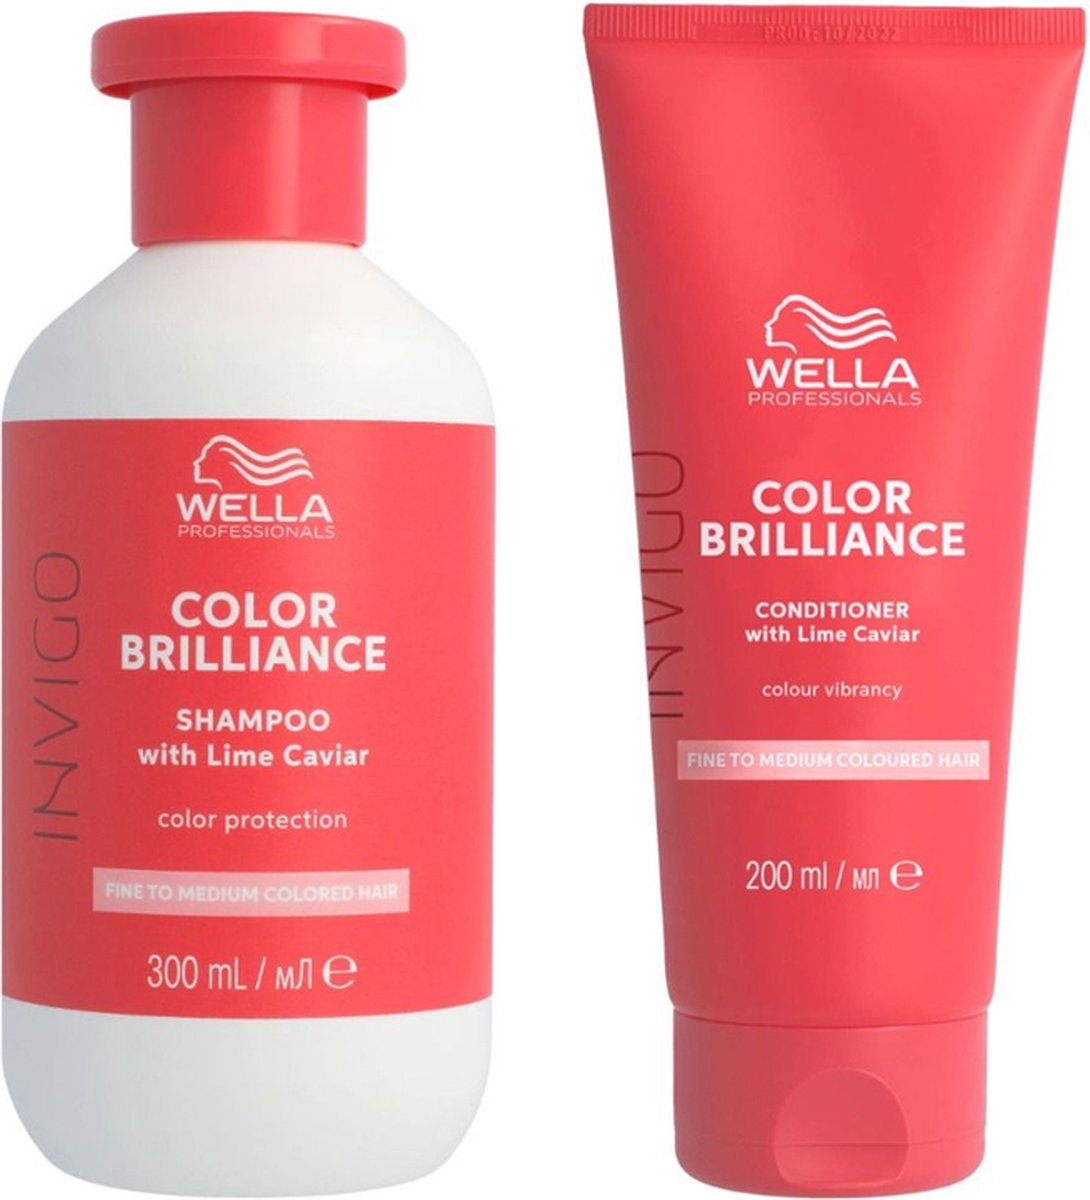 Wella Invigo Brilliance Fijn/Normaal Shampoo 250ml + Conditioner 200ml